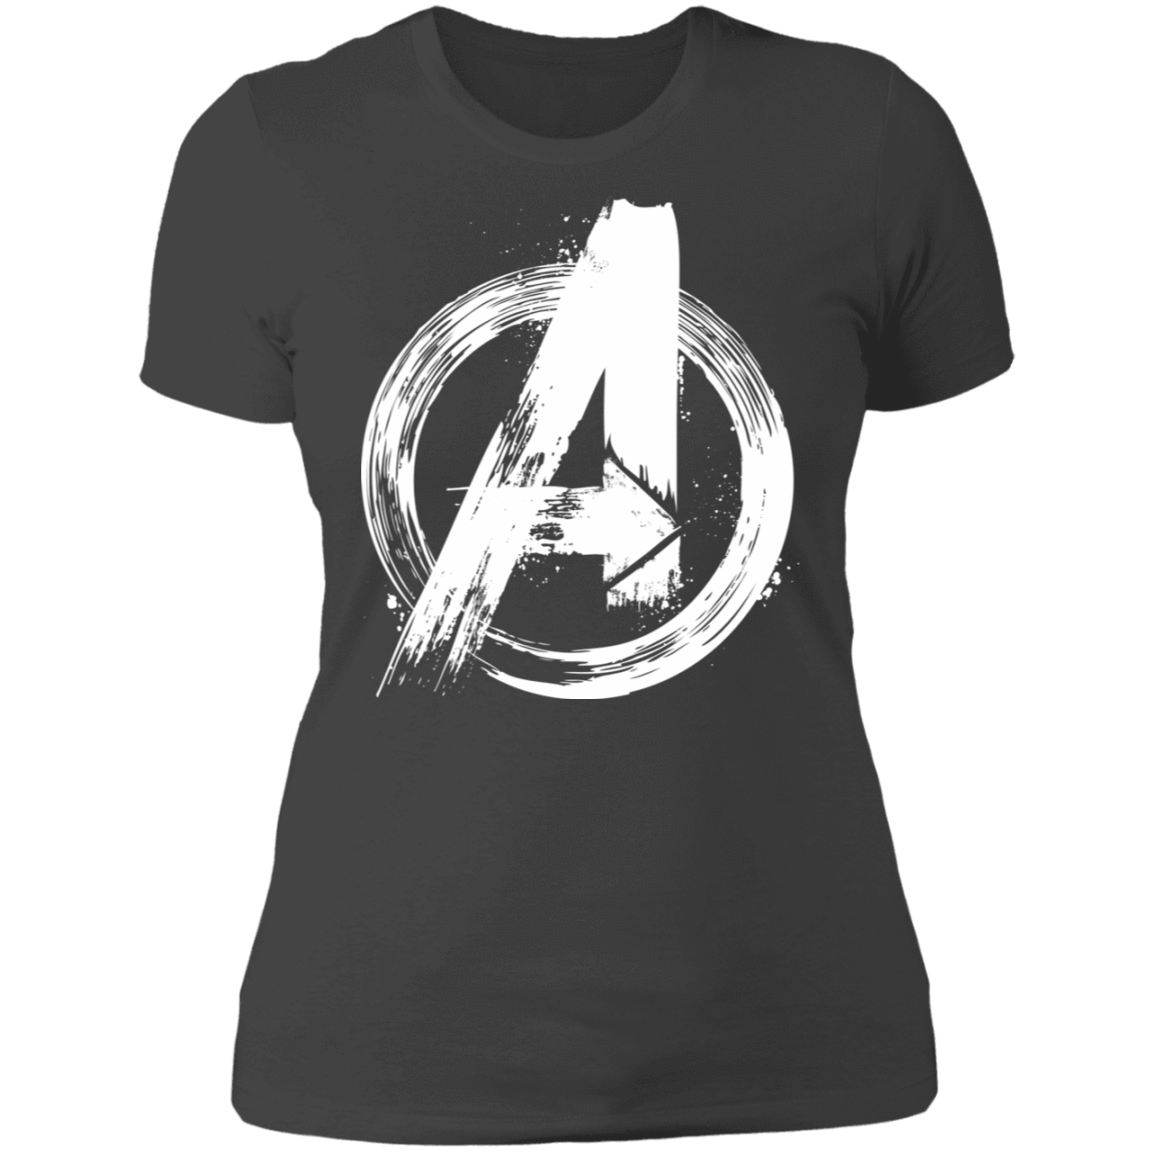 T-Shirts Heavy Metal / S I Am An Avenger Women's Premium T-Shirt